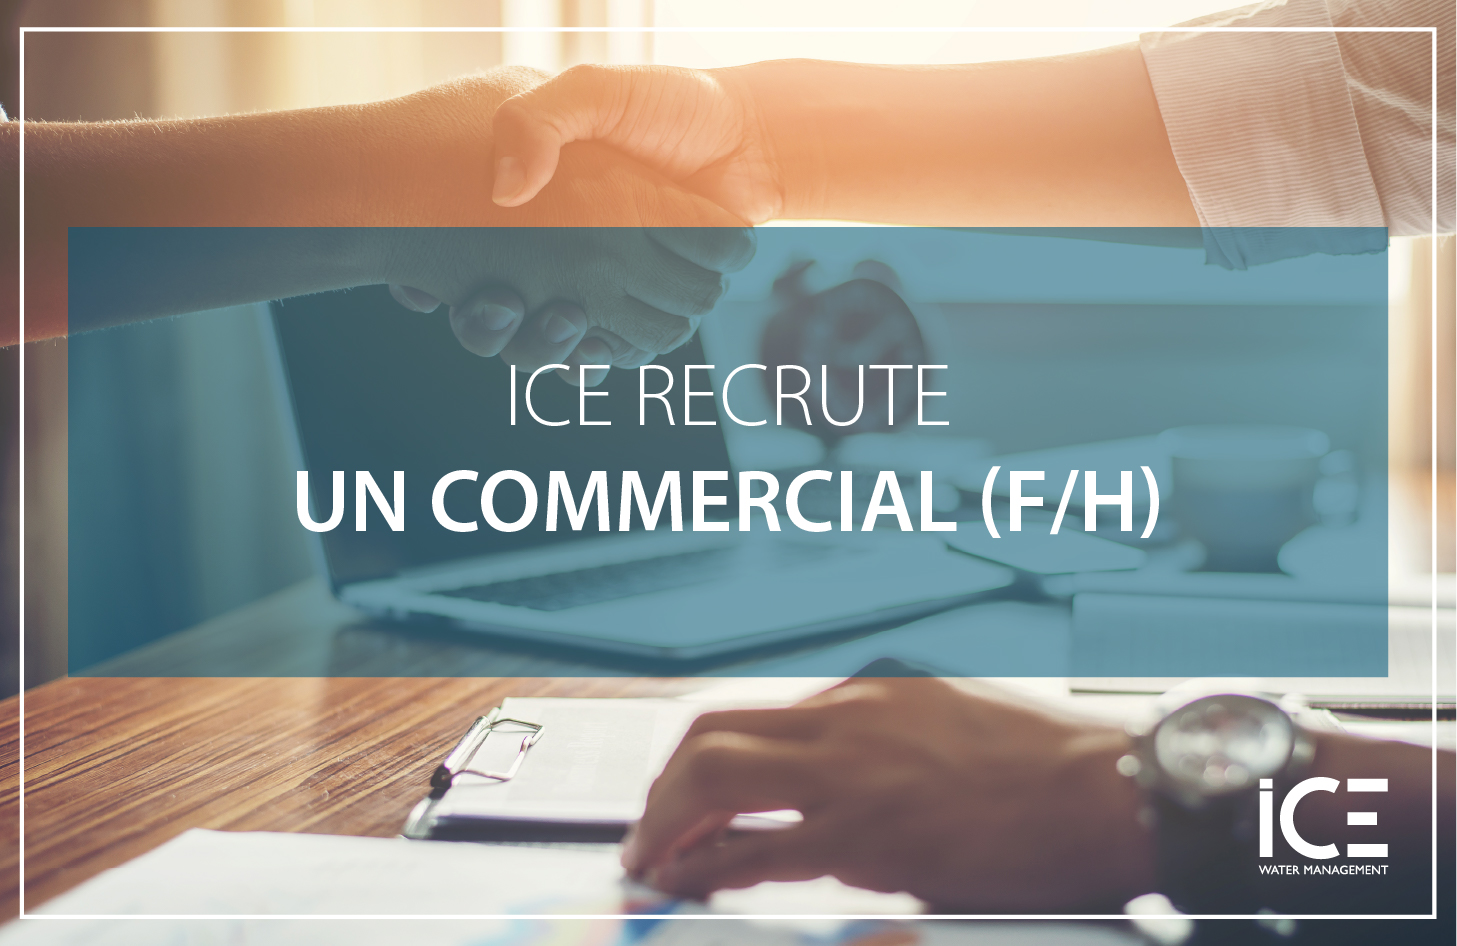 ICE recrute un commercial H/F